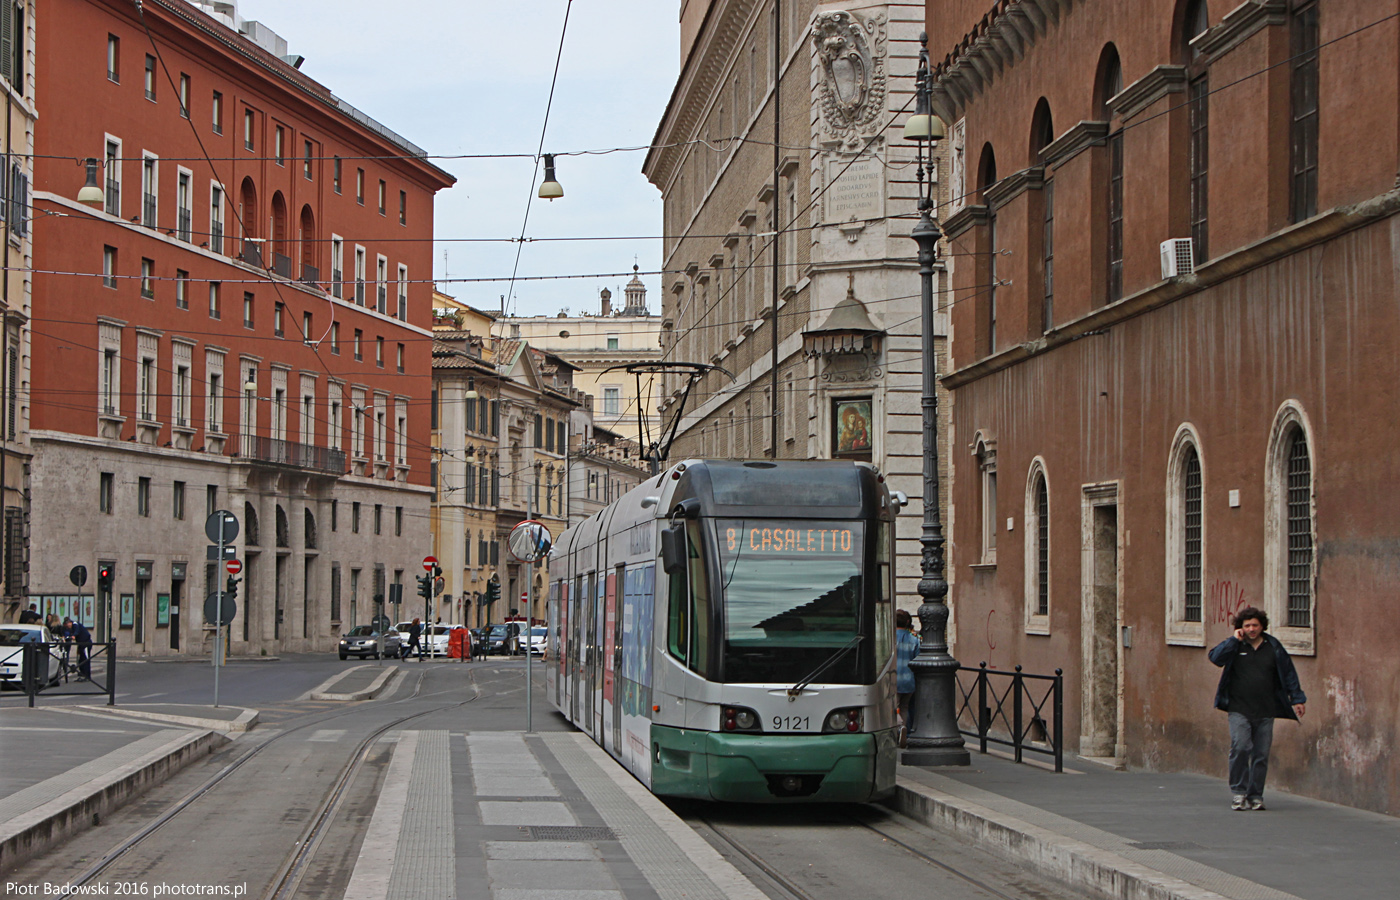 FIAT Ferroviaria Cityway Roma I #9121